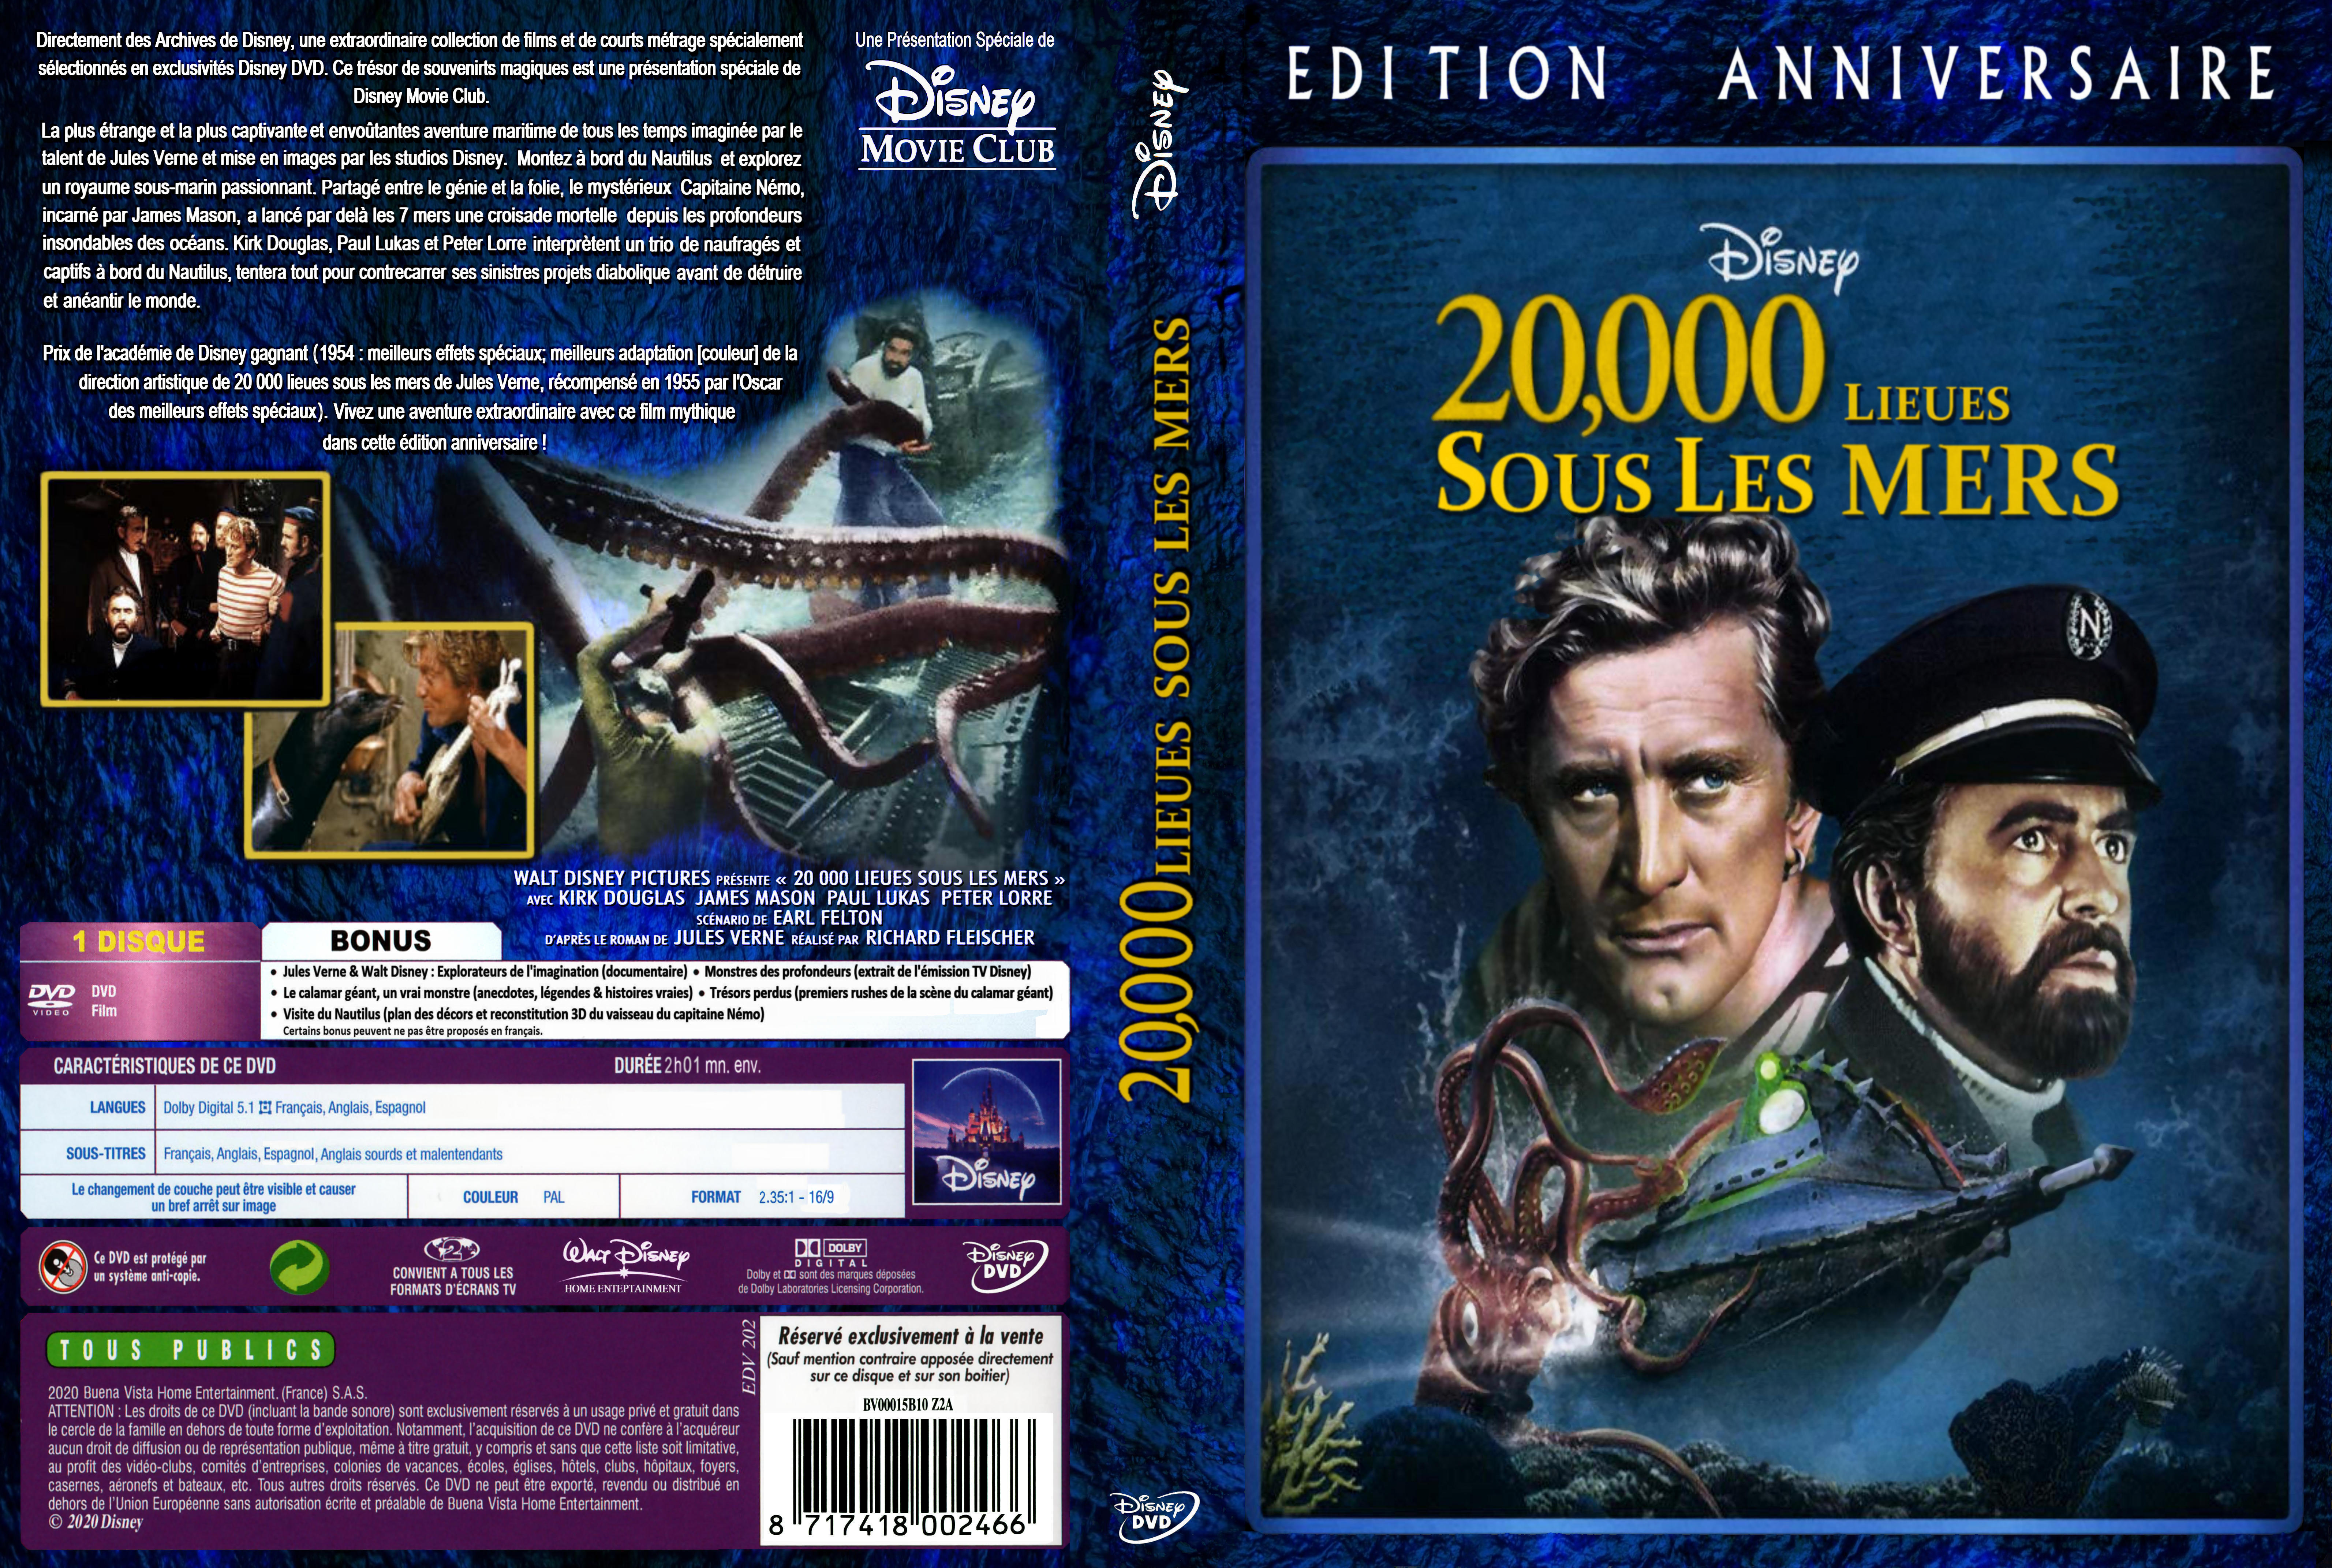 Jaquette DVD 20000 lieux sous les mers custom